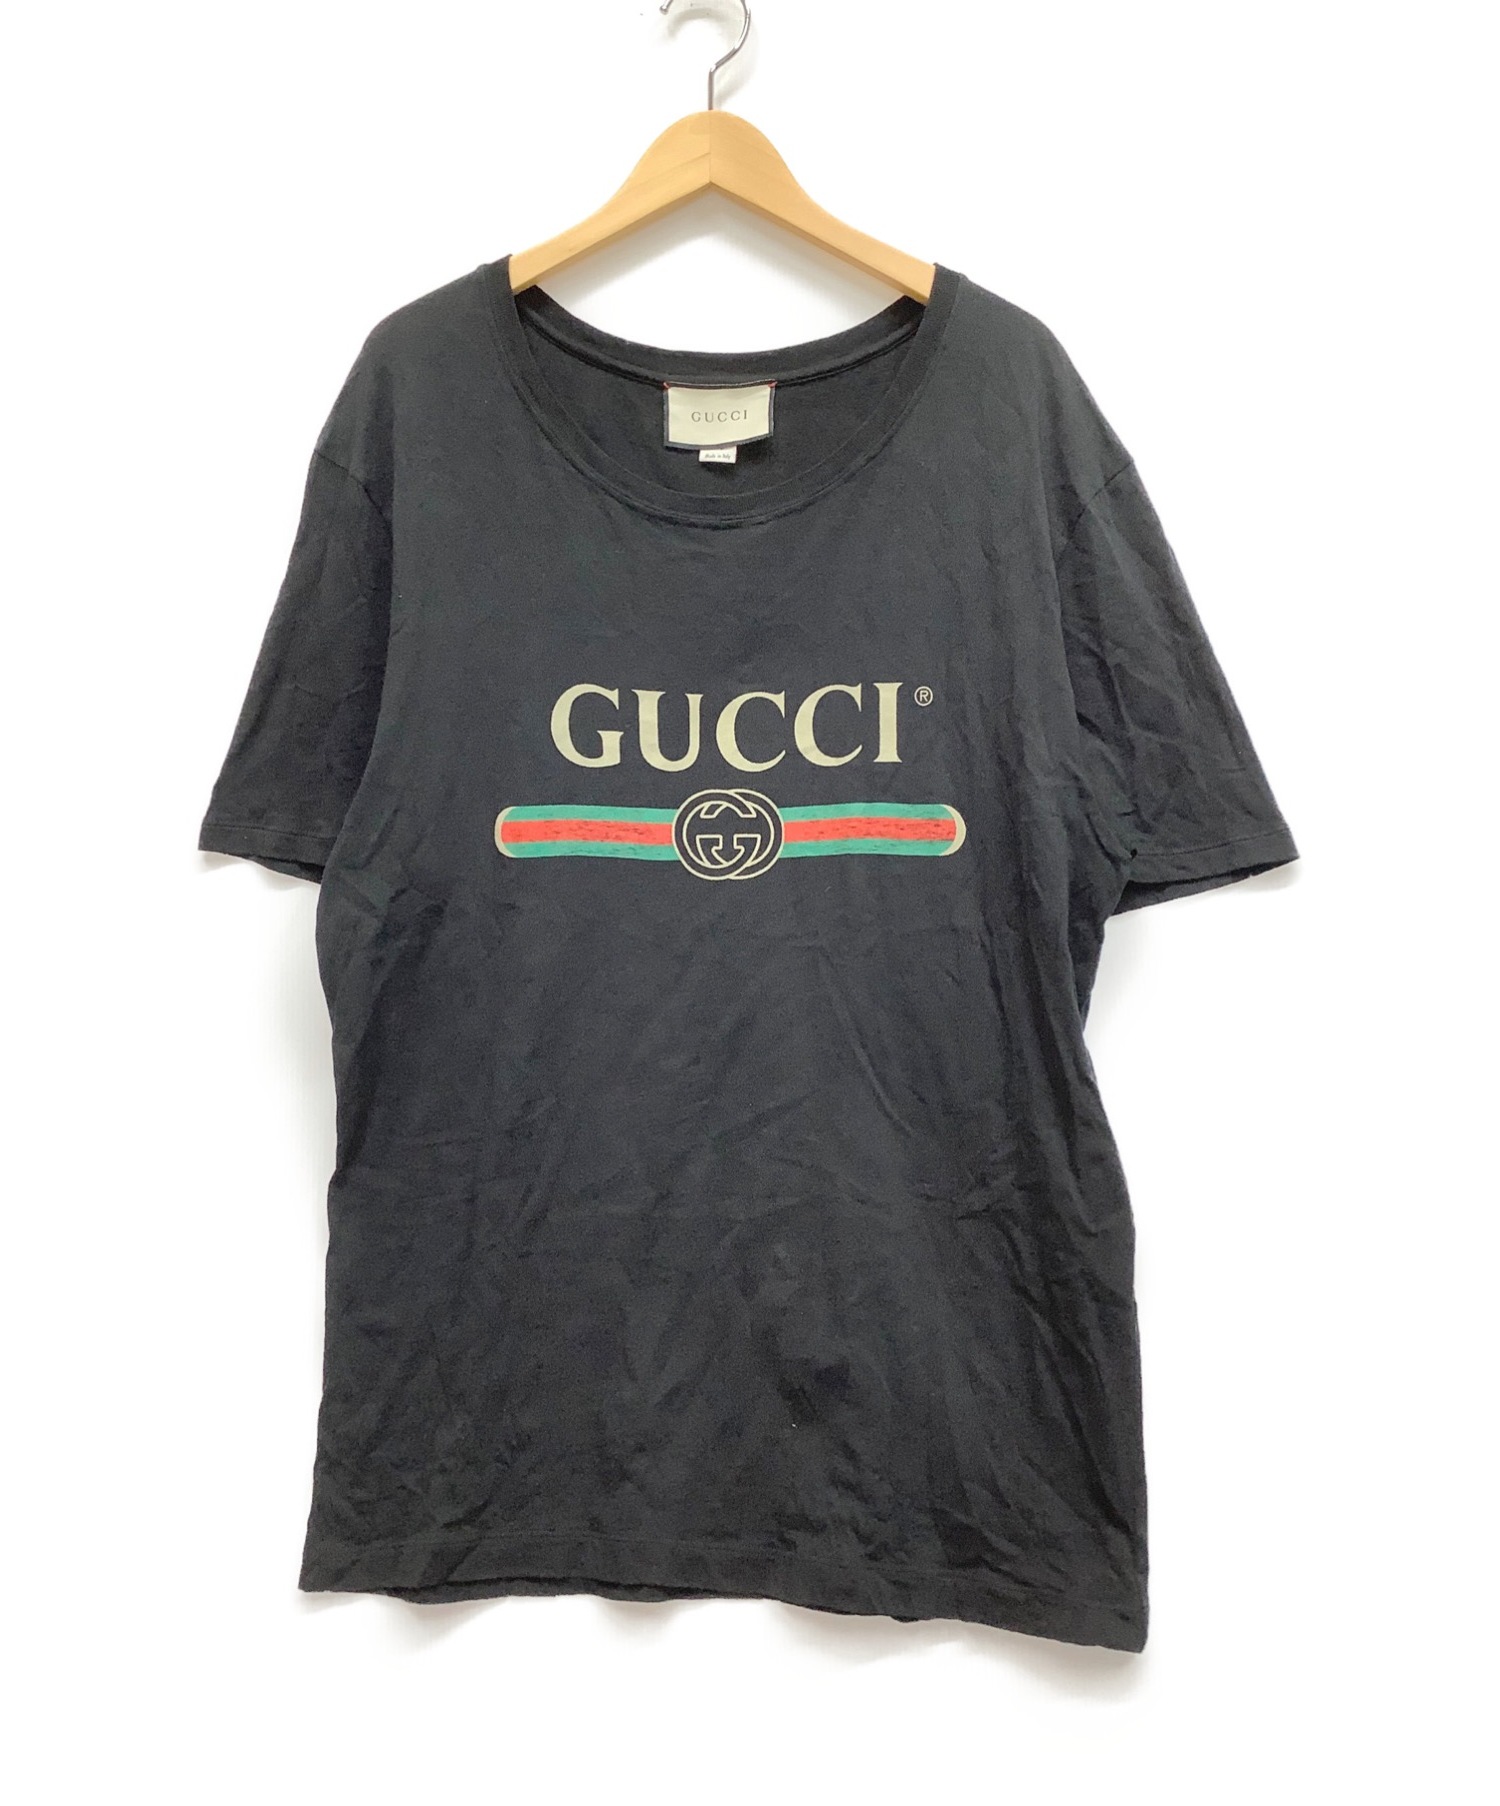 GUCCI (グッチ) Tシャツ ブラック サイズ:L